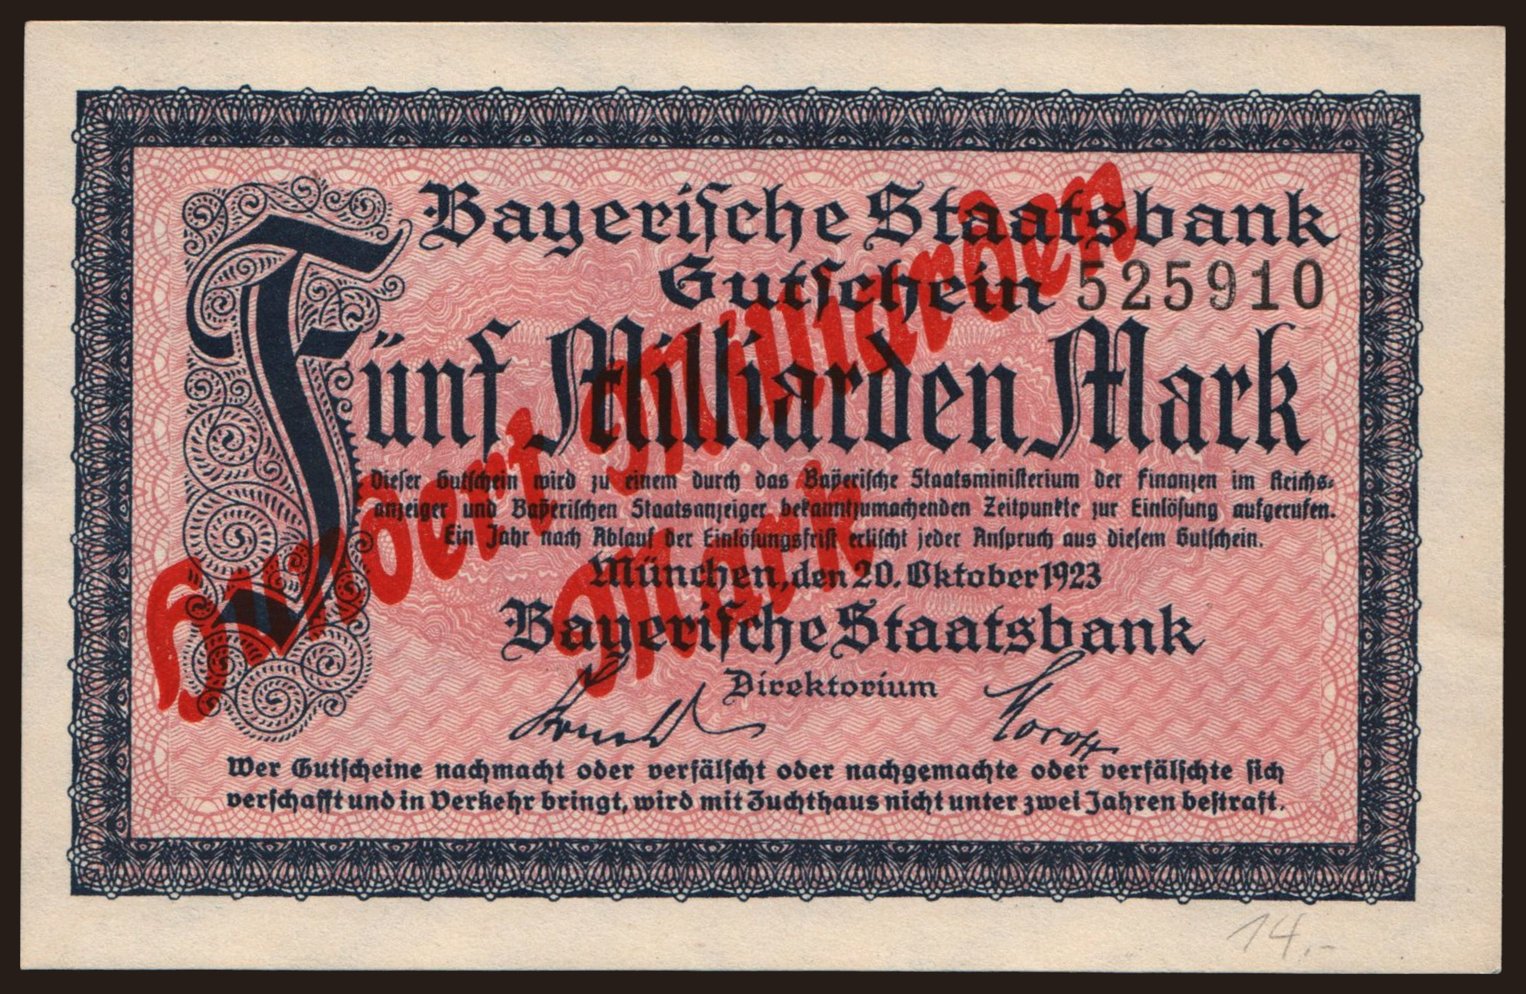 München/ Bayerische Staatsbank, 100.000.000.000 Mark, 1923